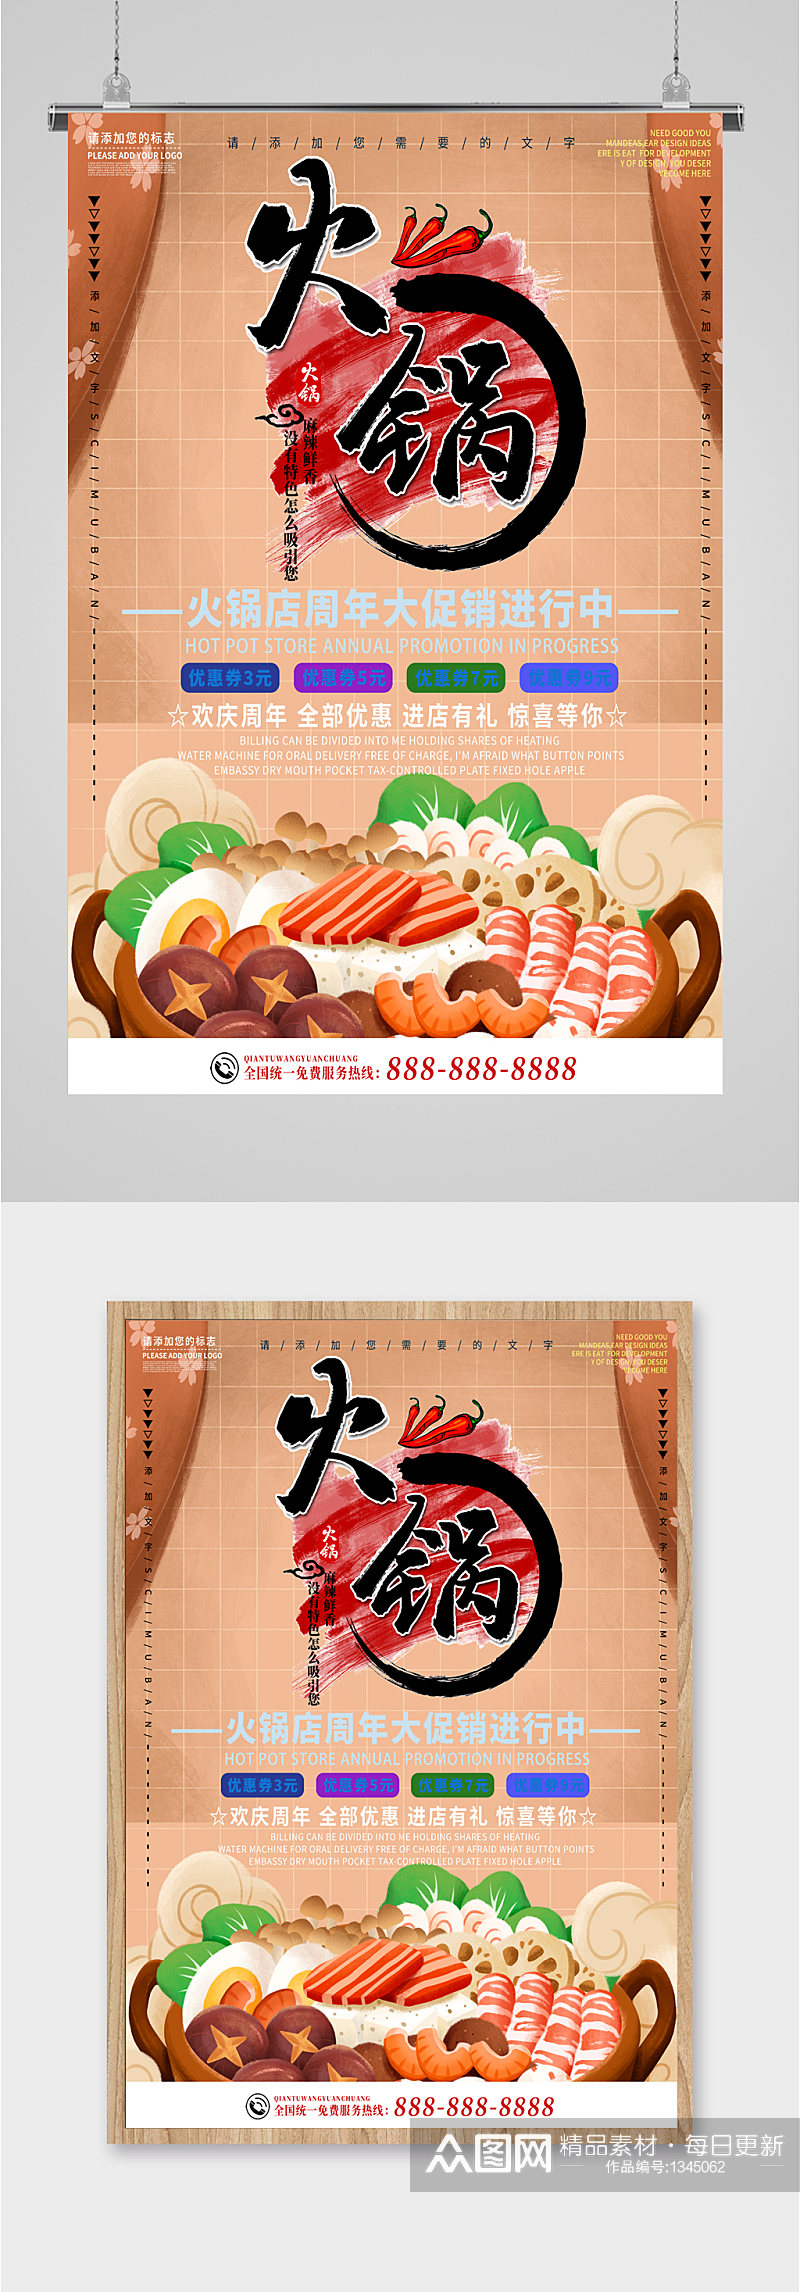 火锅美食宣传海报素材